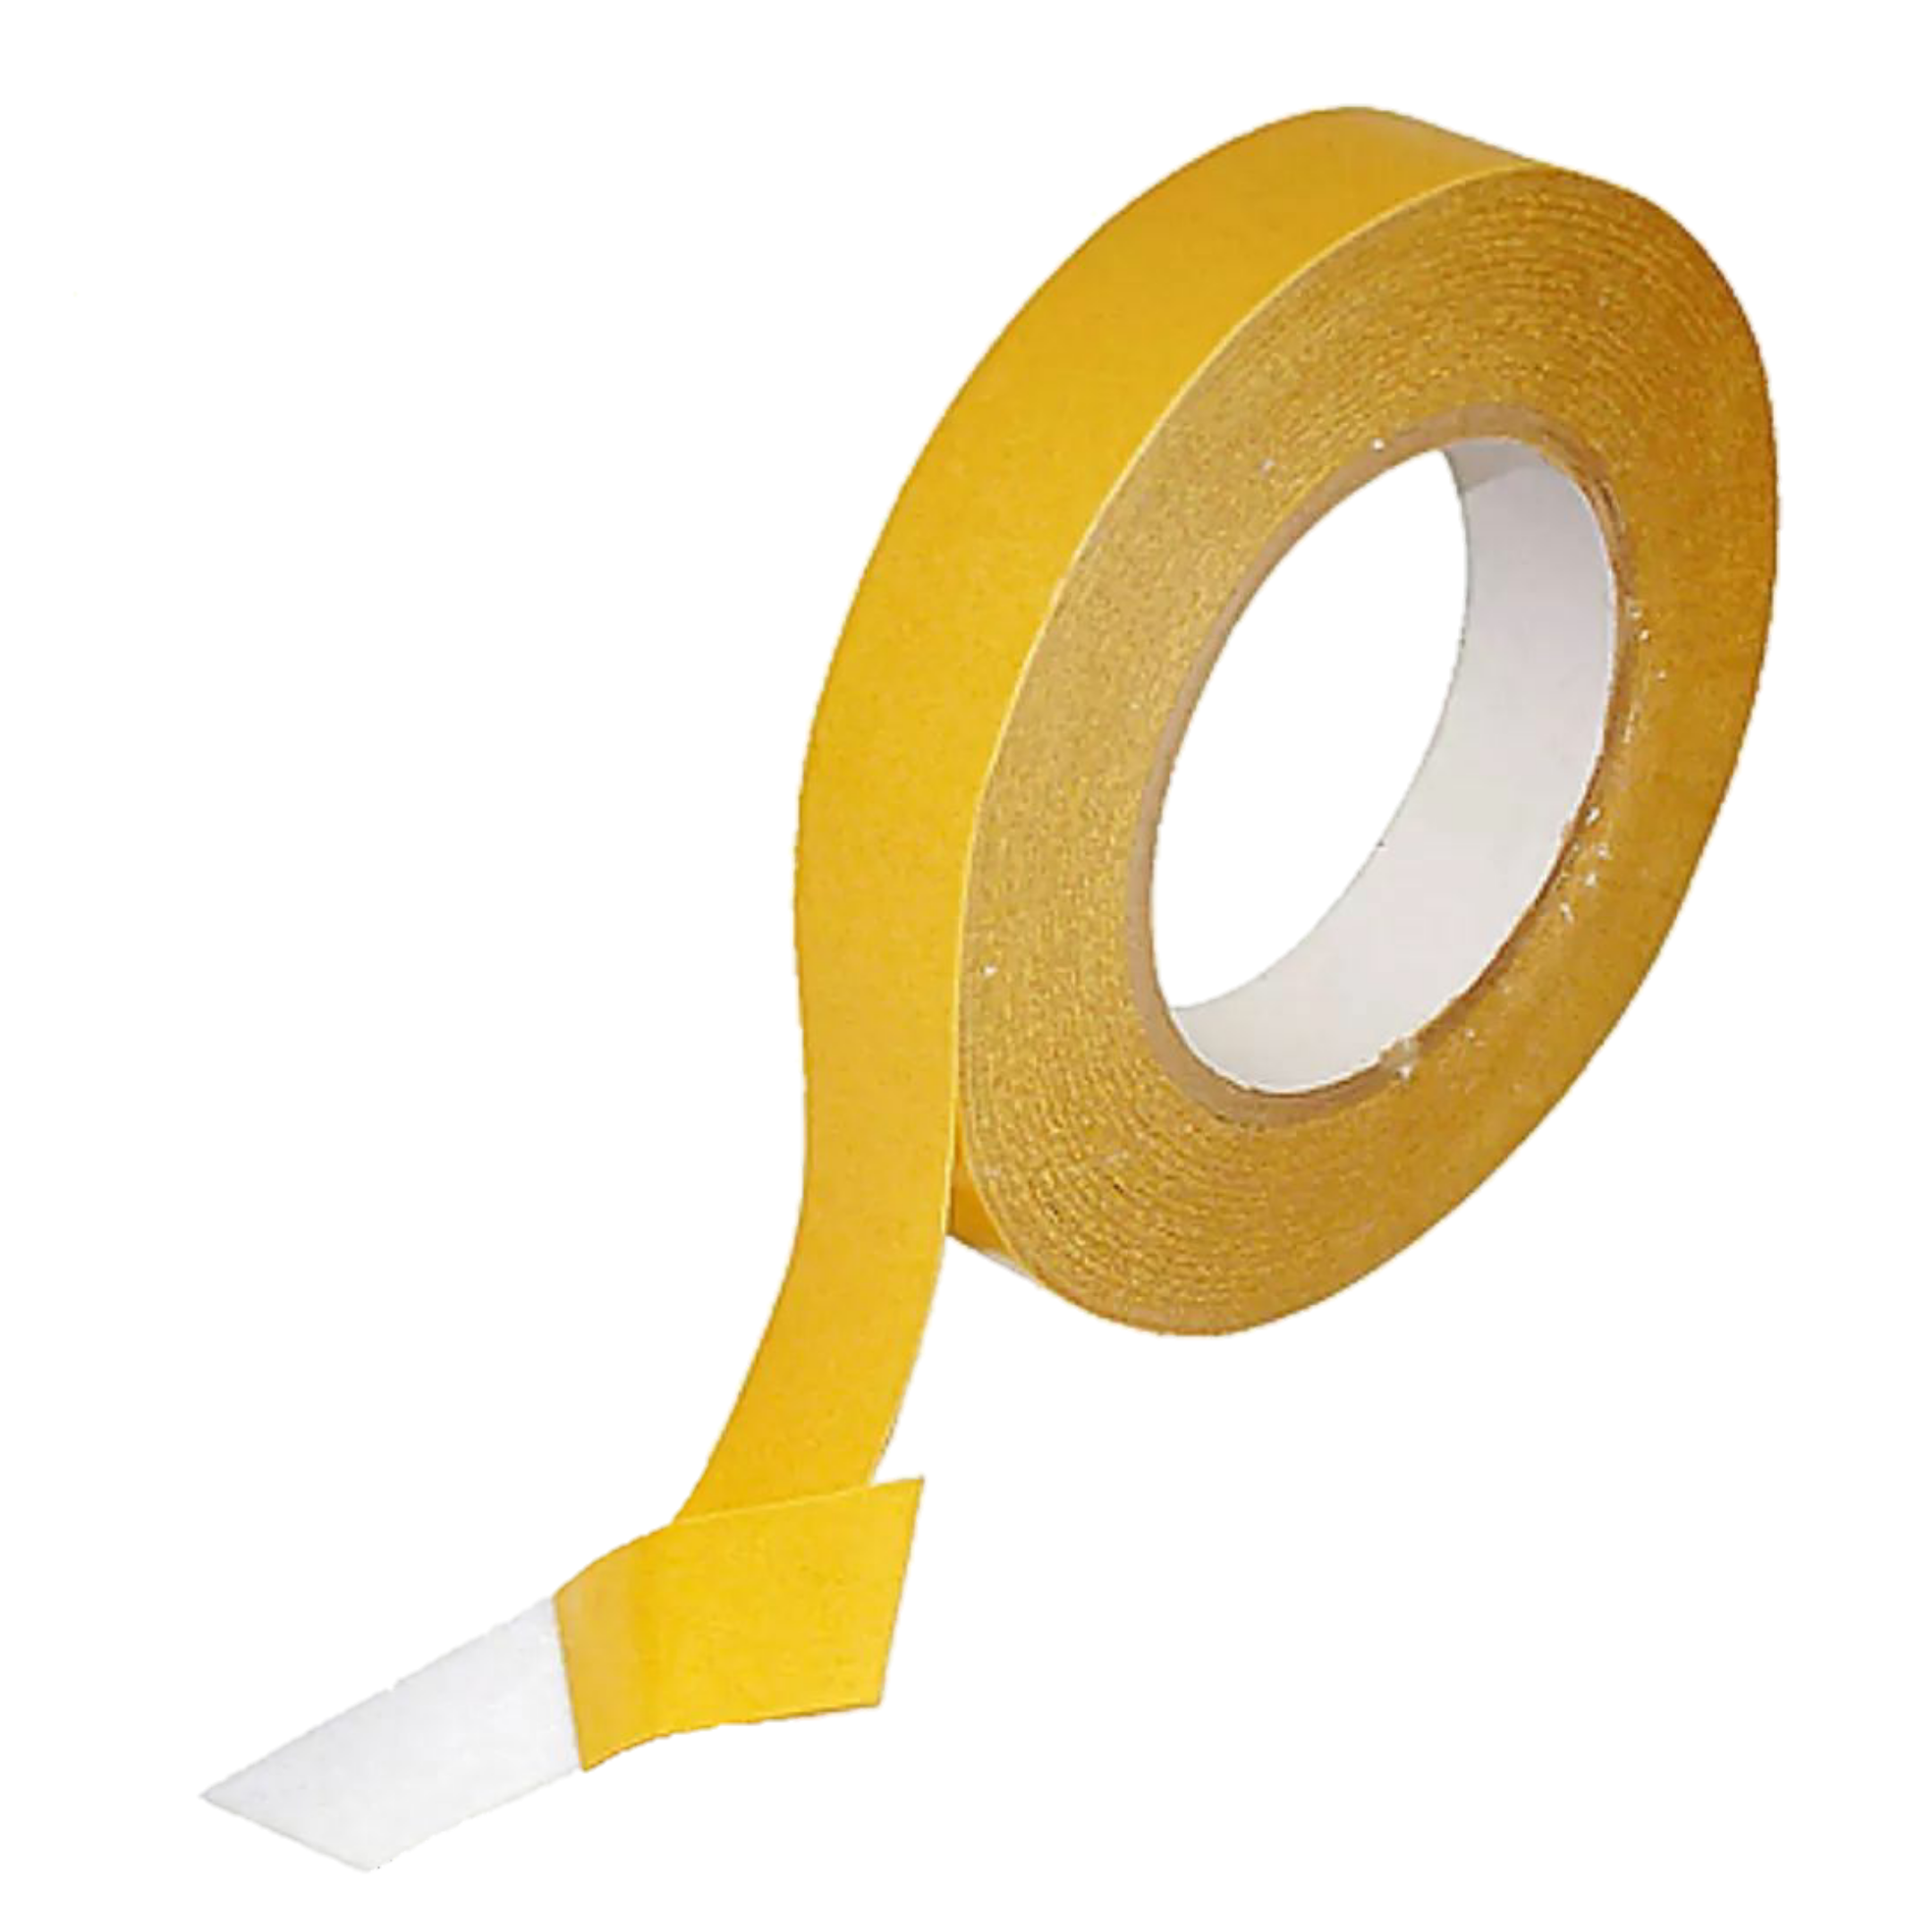 Cinta doble cara de papel tissue tape – Crafty Mart